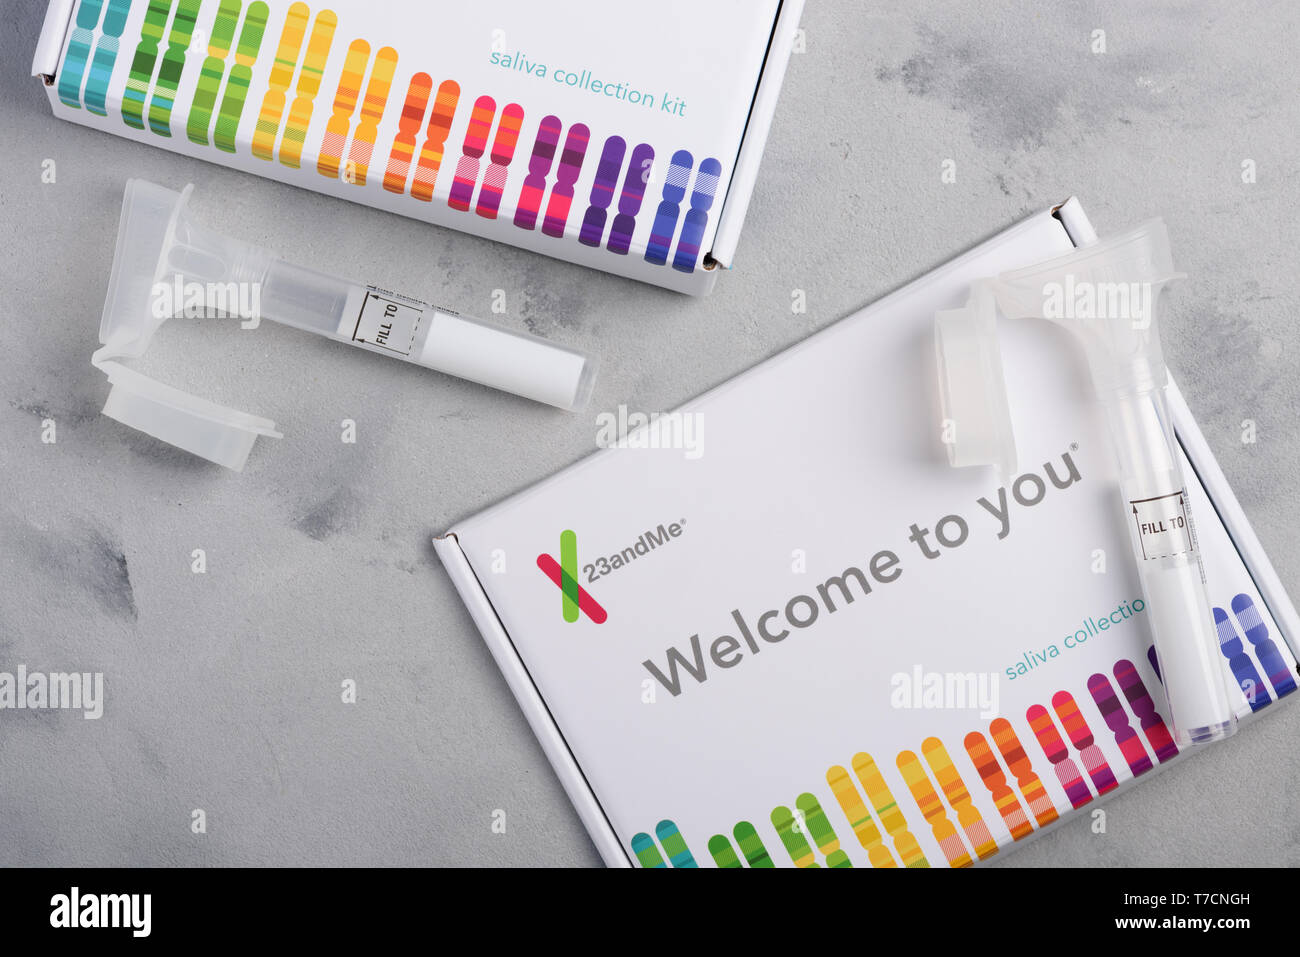 Kiev, Ukraine - 17 octobre 2018 : 23andMe test génétique personnelle kit de prélèvement de salive, avec tube et fort sur le tableau Vue de dessus. Rédaction d'illustration Banque D'Images